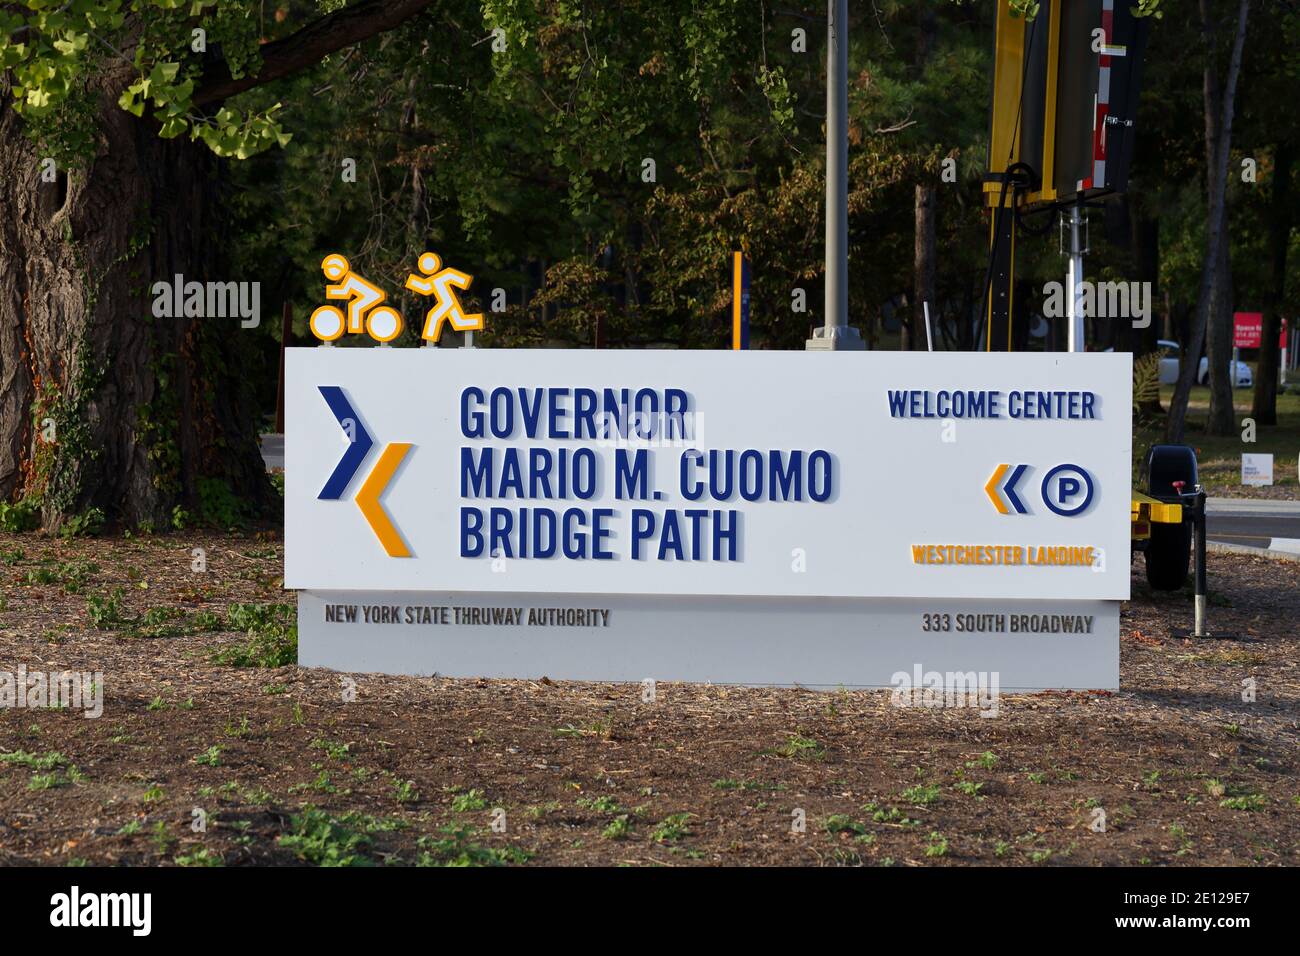 Segnaletica per il Governatore Mario M. Cuomo Bridge, sentiero pedonale e ciclabile a Tarrytown, New York. Foto Stock